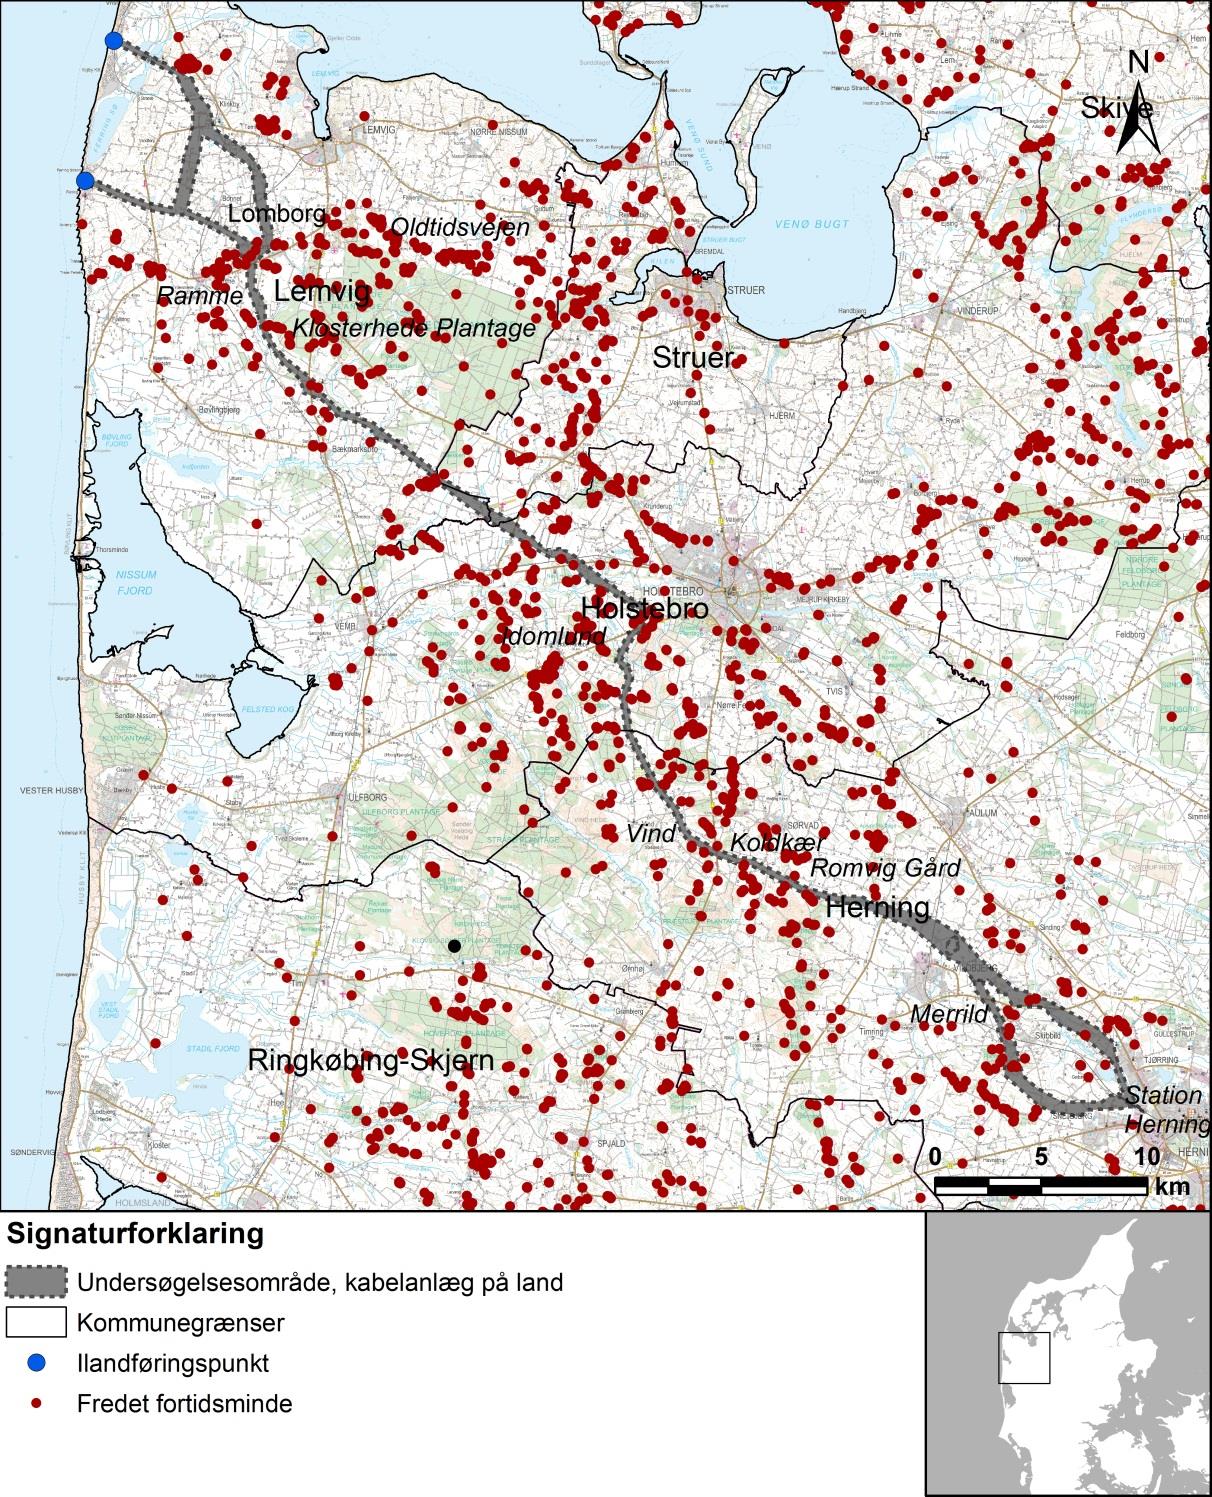 1 2 Figur 22-7. Kort over undersøgelsesområde samt densiteten af fredede fortidsminder i og omkring undersøgelsesområdet på land (Holstebro Museum, 2014).